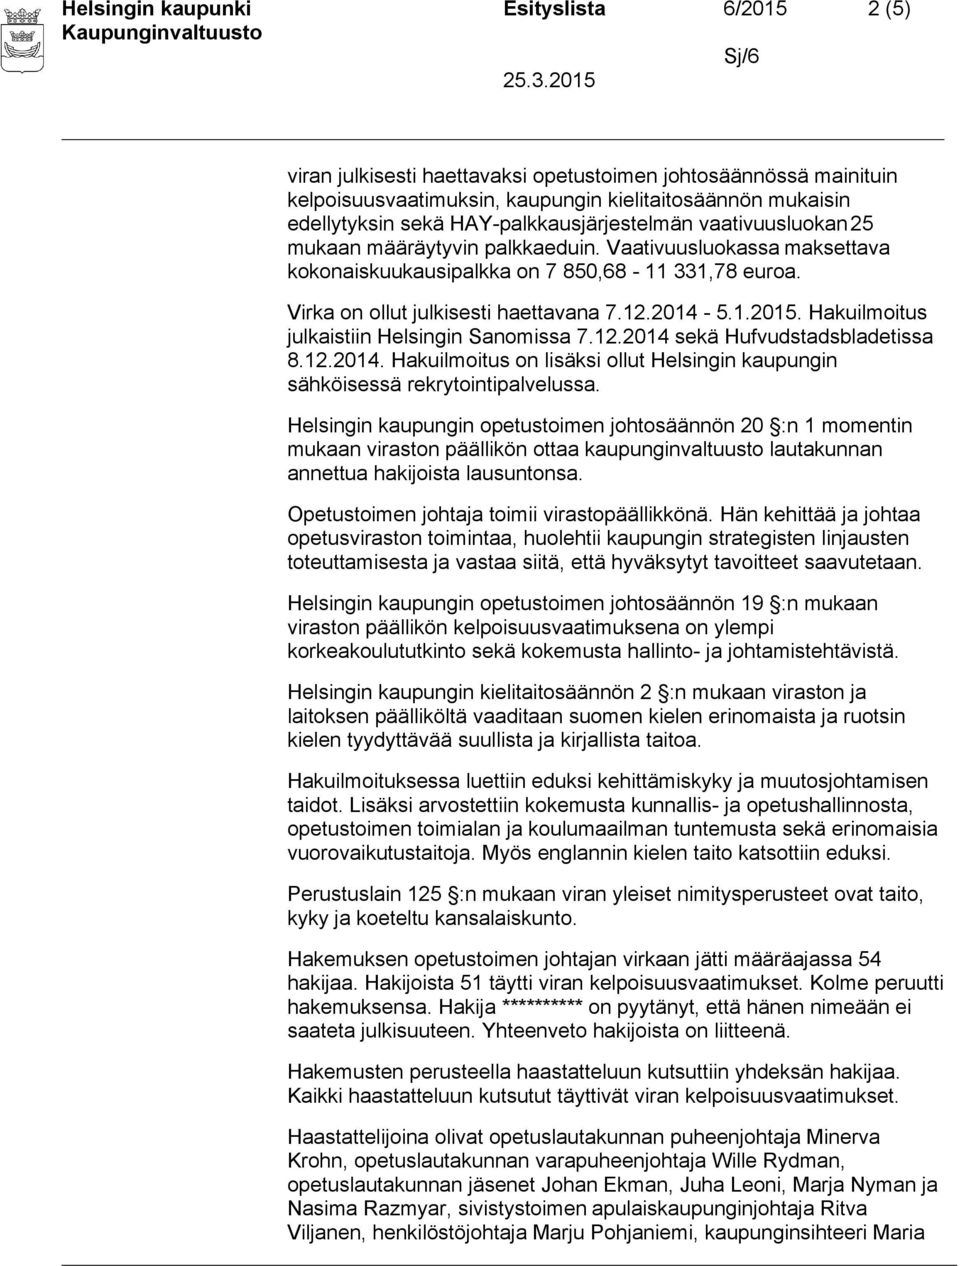 2014-5.1.2015. Hakuilmoitus julkaistiin Helsingin Sanomissa 7.12.2014 sekä Hufvudstadsbladetissa 8.12.2014. Hakuilmoitus on lisäksi ollut Helsingin kaupungin sähköisessä rekrytointipalvelussa.